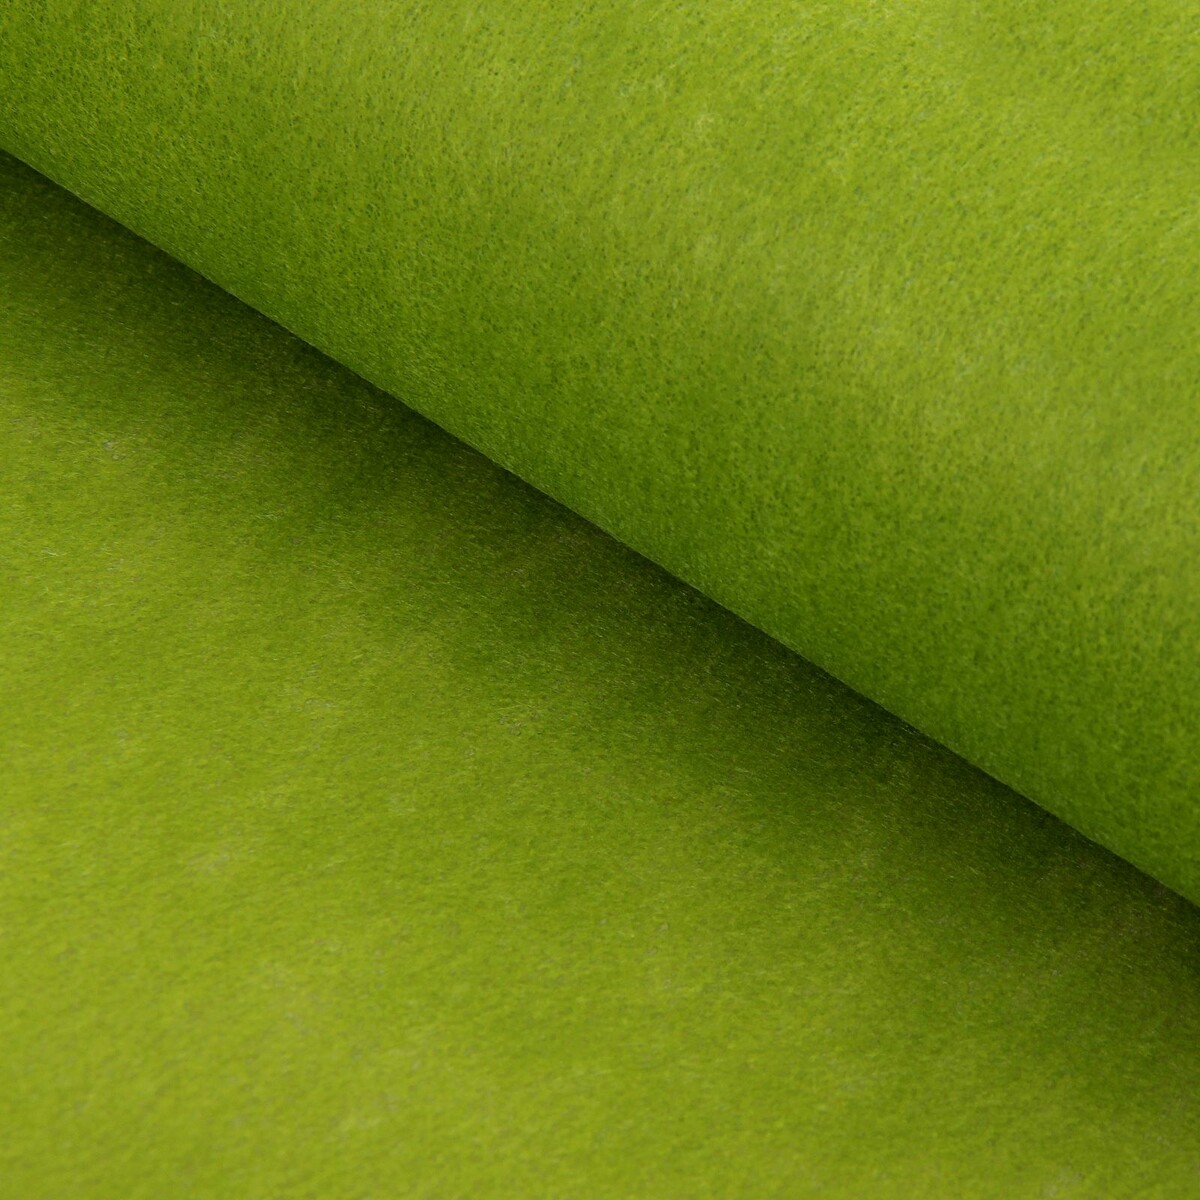 Фетр для упаковок и поделок, однотонный, оливковый, двусторонний, зеленый, рулон 1шт., 50 см x 15 м мяч для художественной гимнастики lugger однотонный d 19 см зеленый с блестками